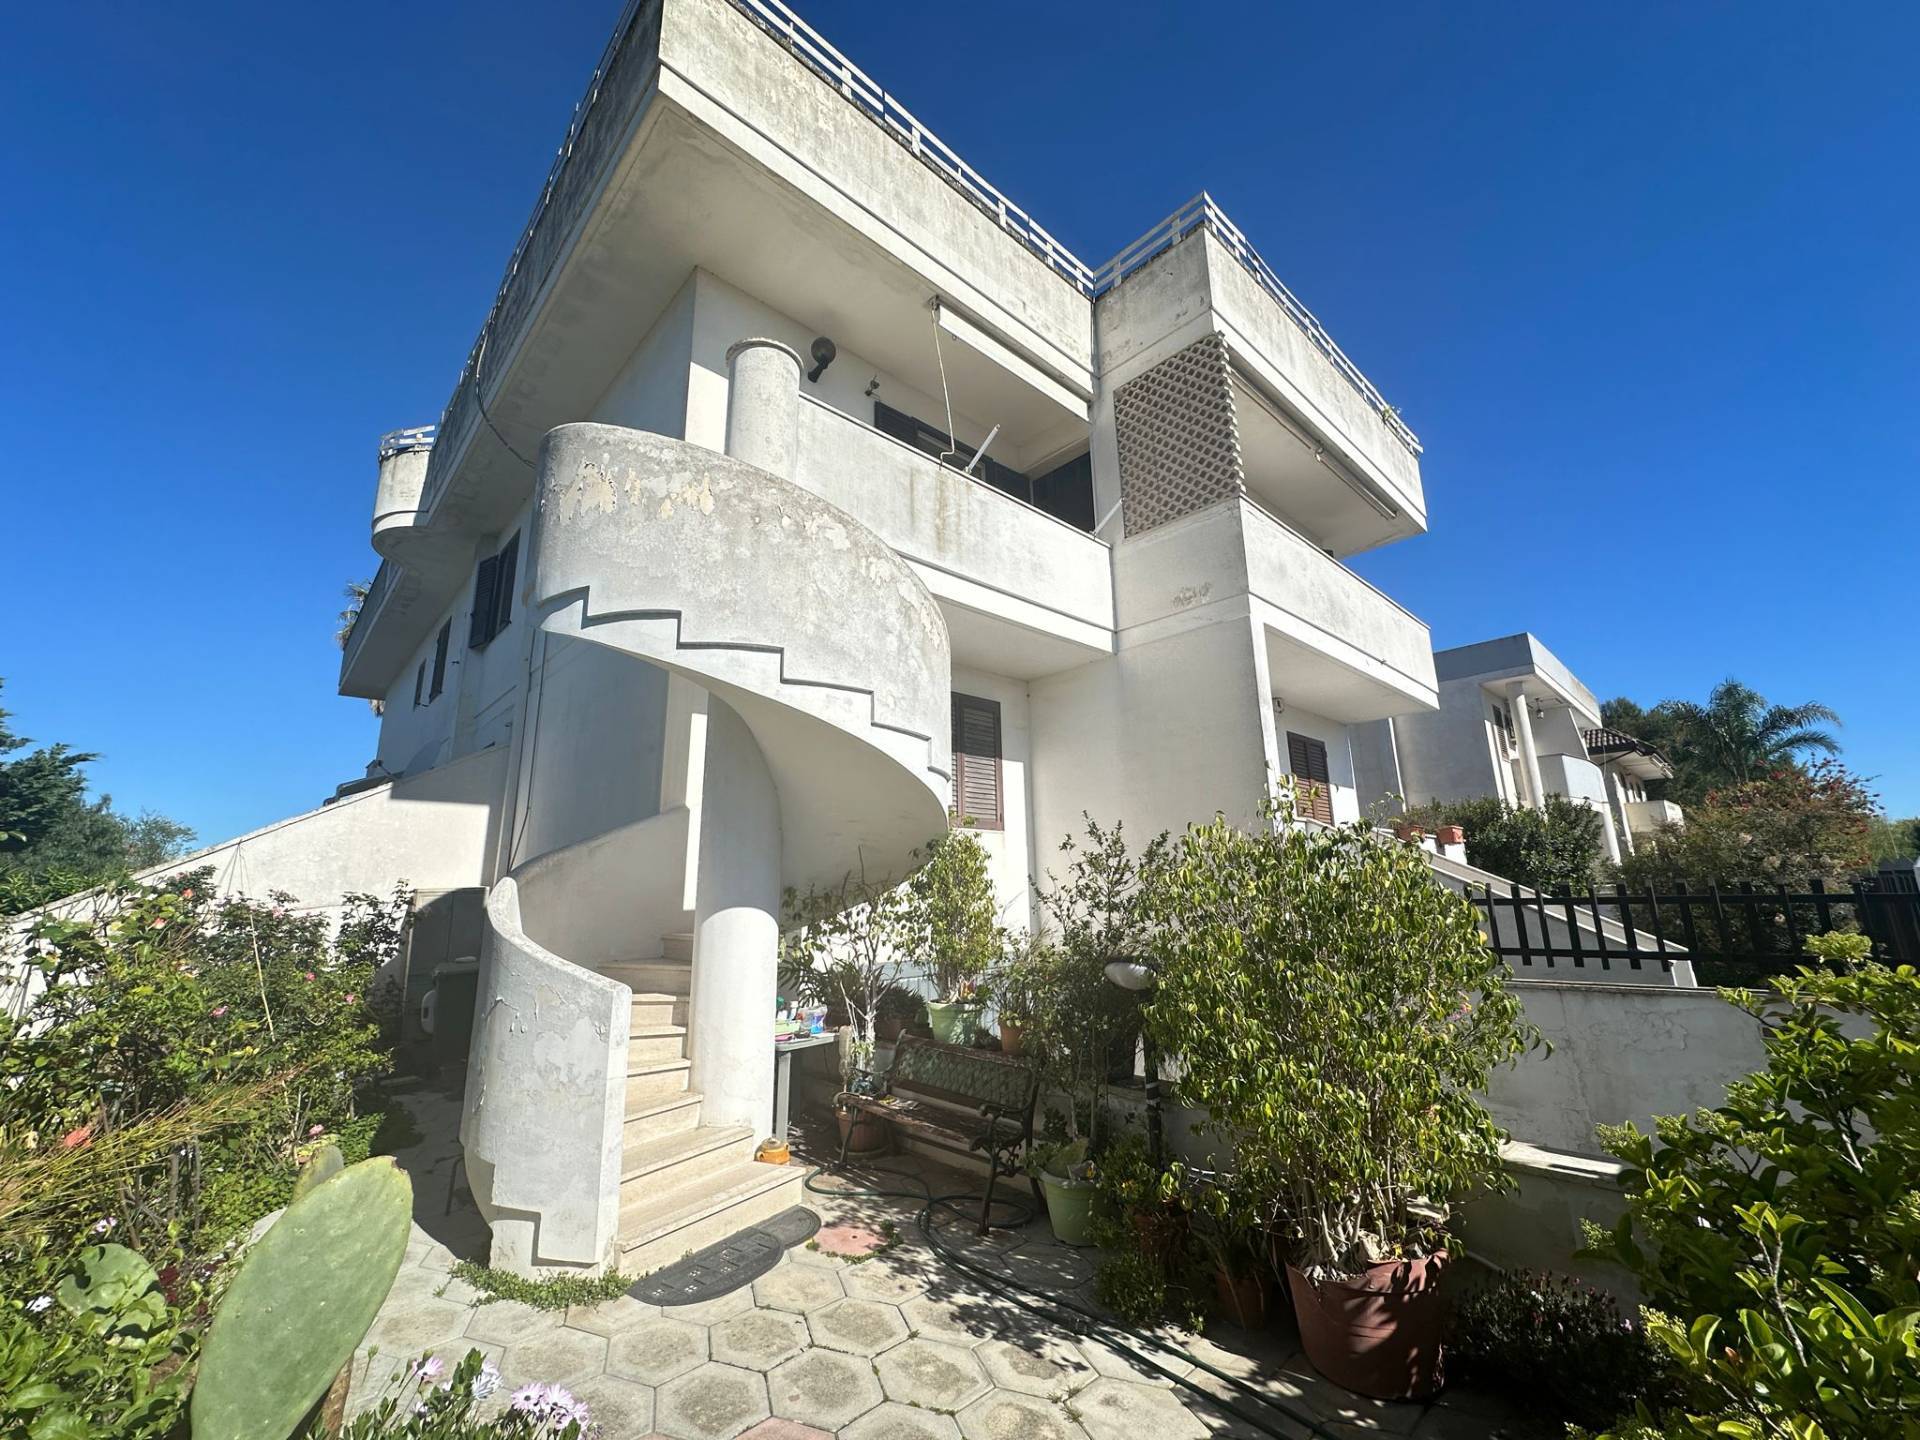 Appartamento in vendita a Lequile, 6 locali, prezzo € 160.000 | PortaleAgenzieImmobiliari.it